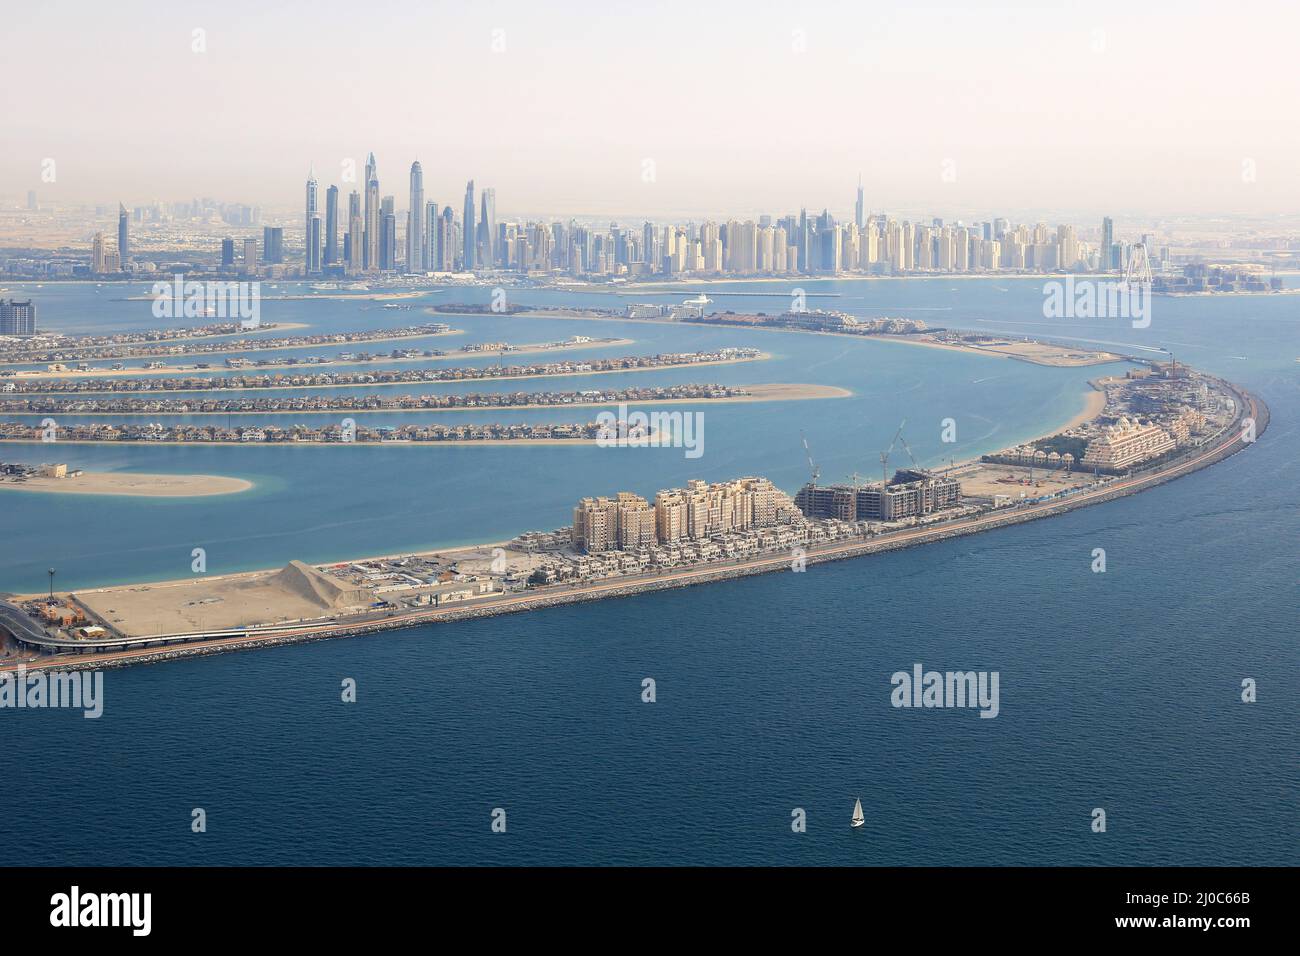 Dubai The Palm Jumeirah Palm Island Marina aerial view aerial photo Stock Photo